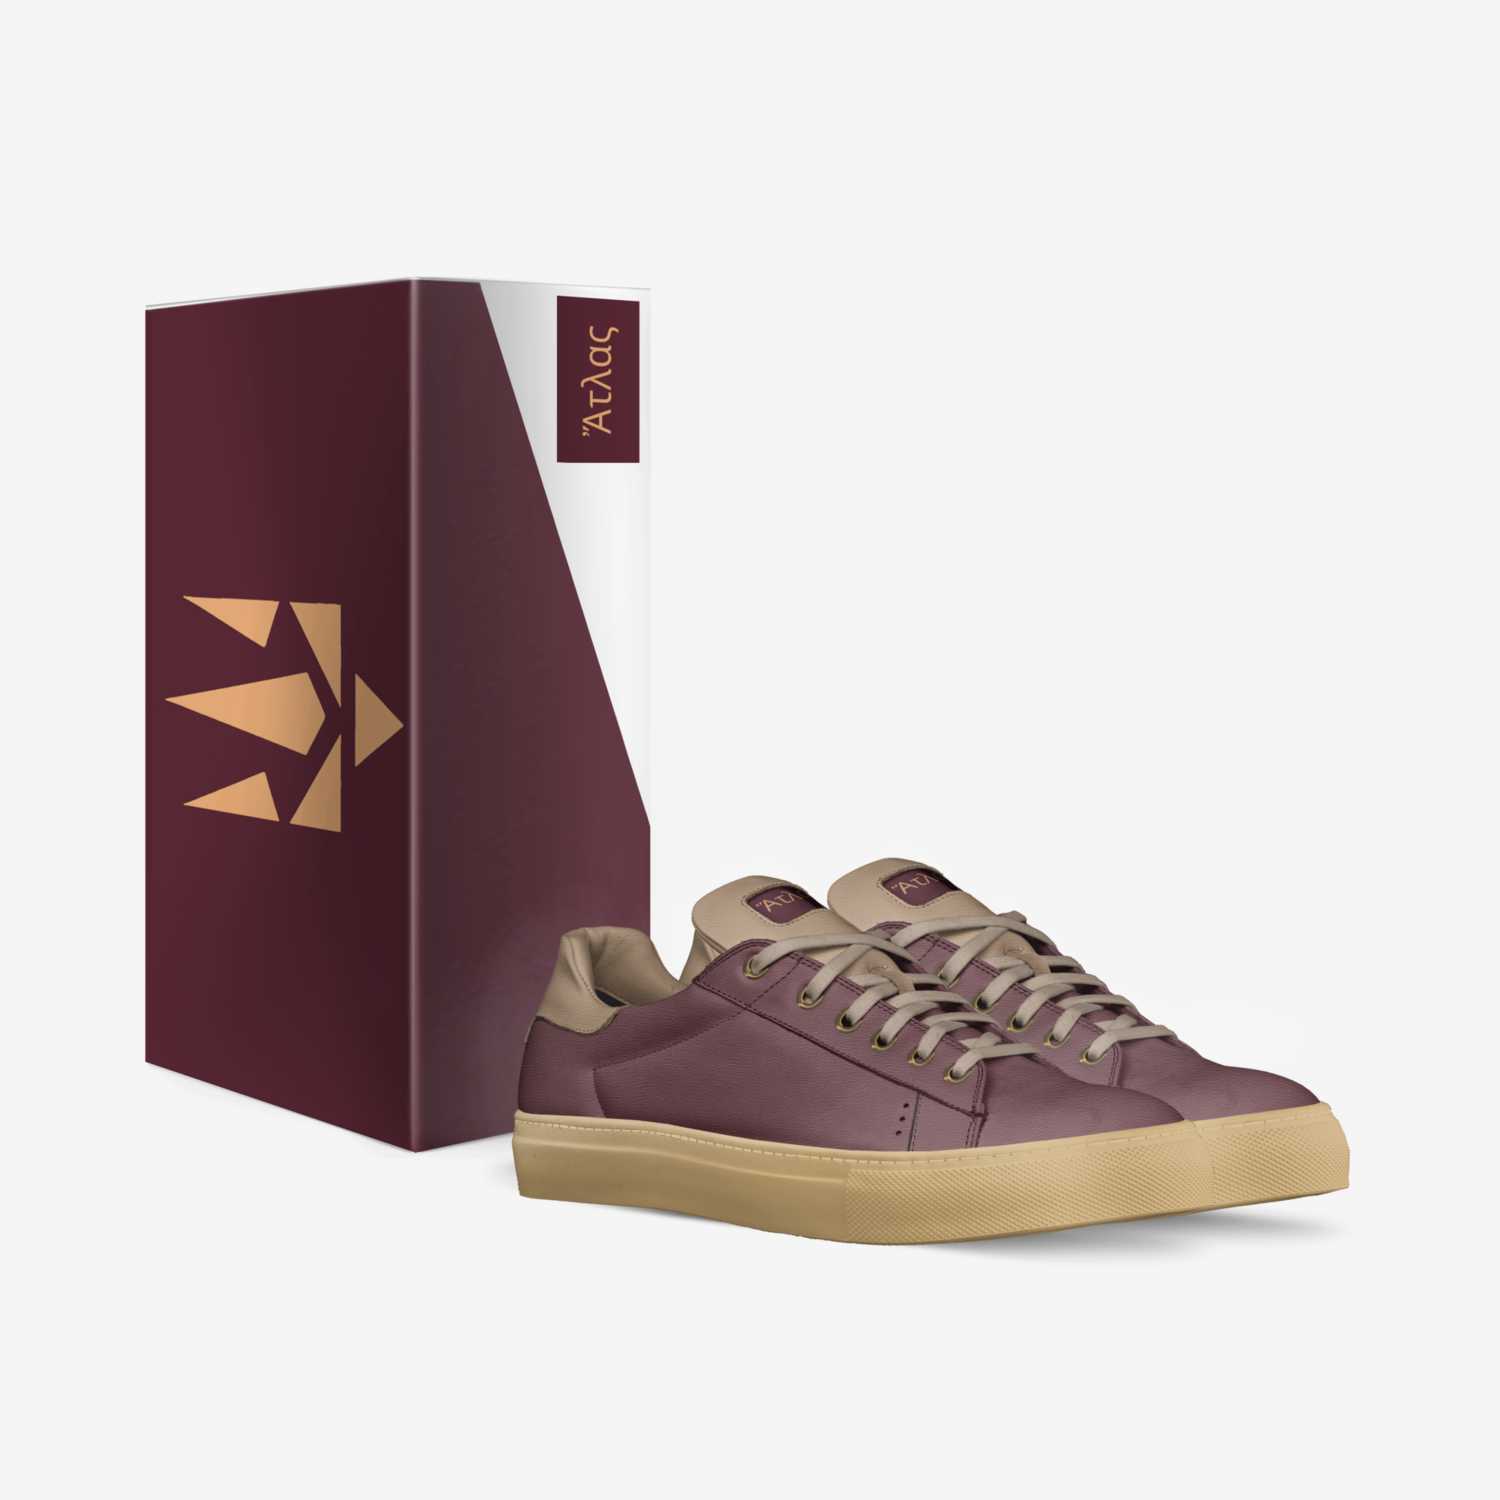 A T L A S custom made in Italy shoes by Ryan G. Rgp Enterprises, Llc | Box view